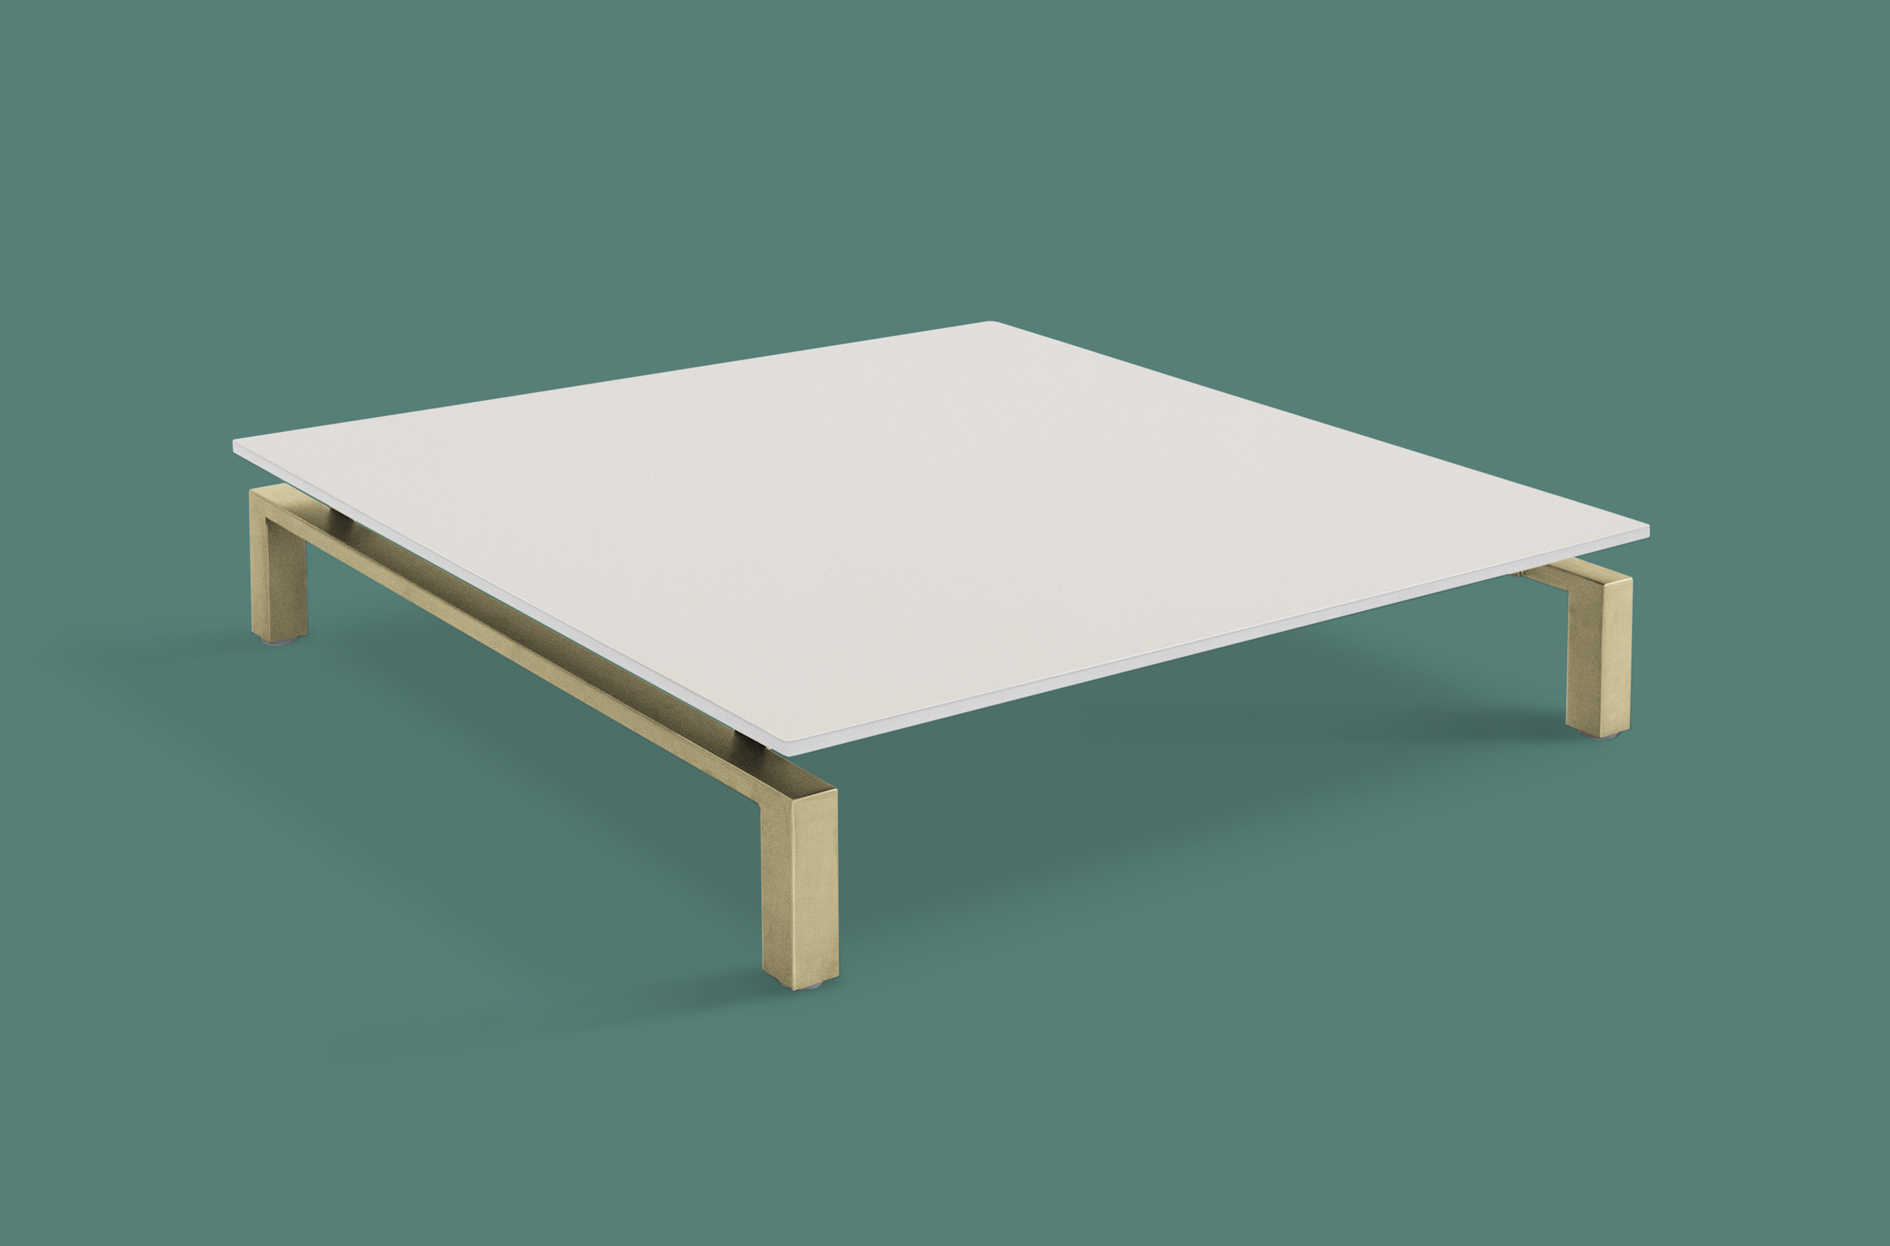 hm93k table (colour) (low res).jpg